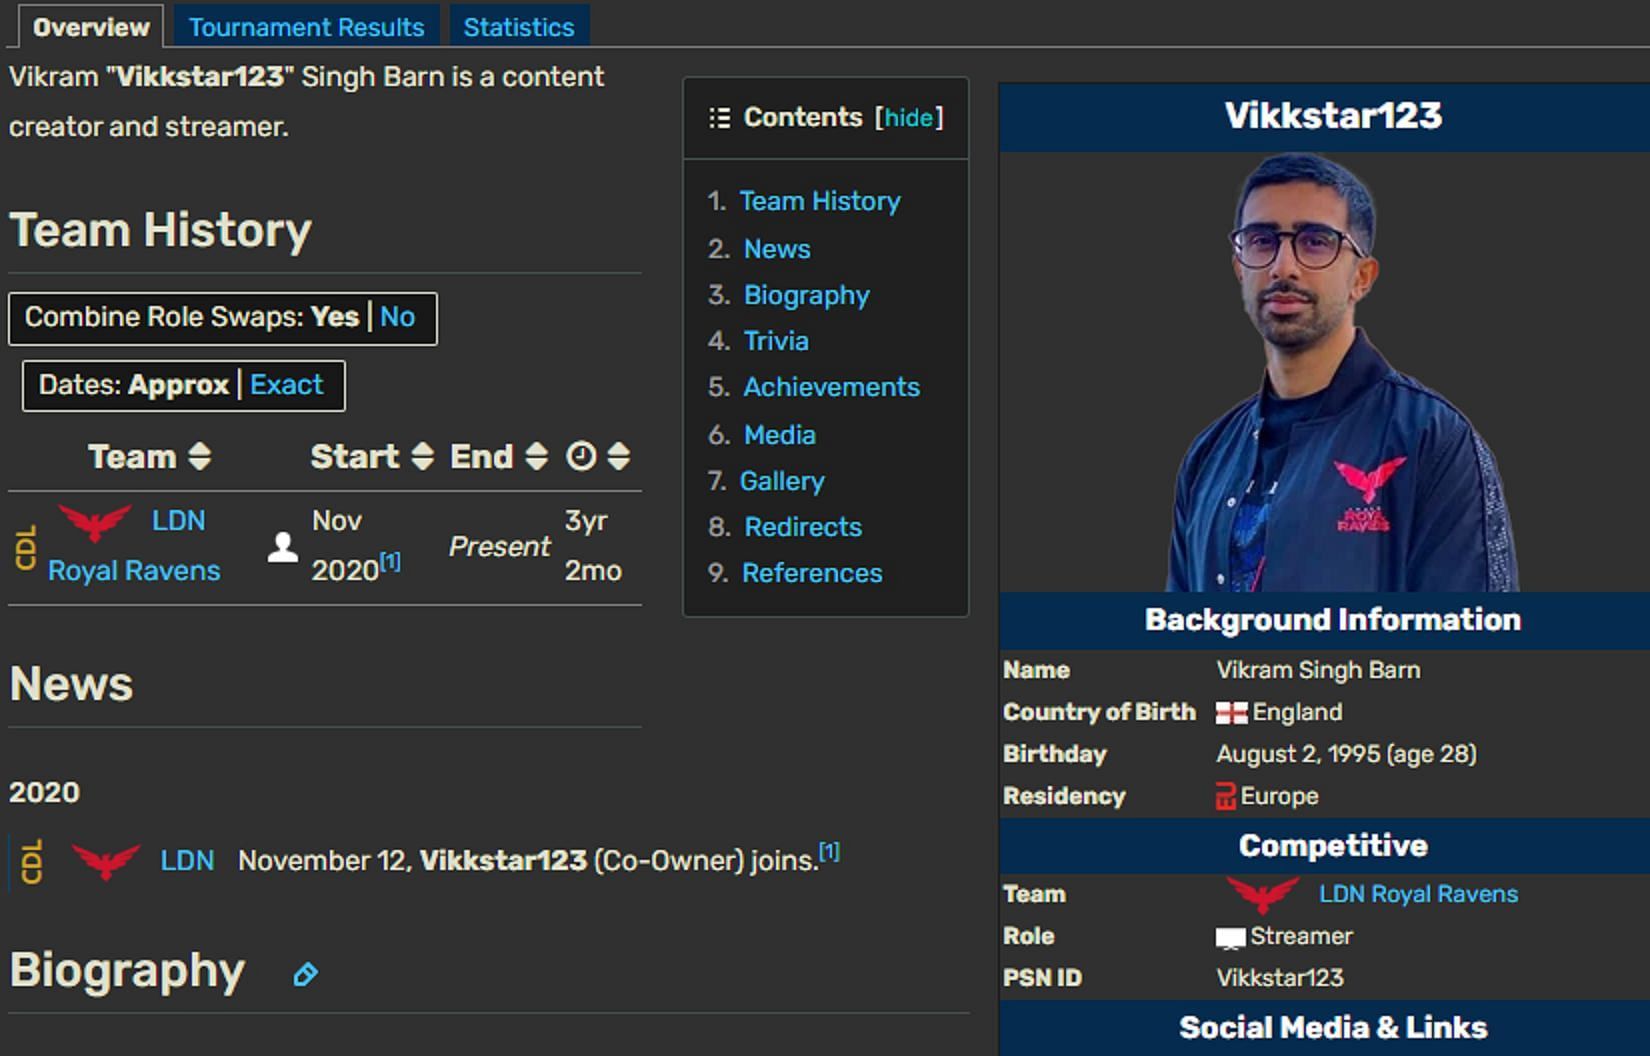 Vikram also owns a gaming org (Image via cod-esports.fandom.com)